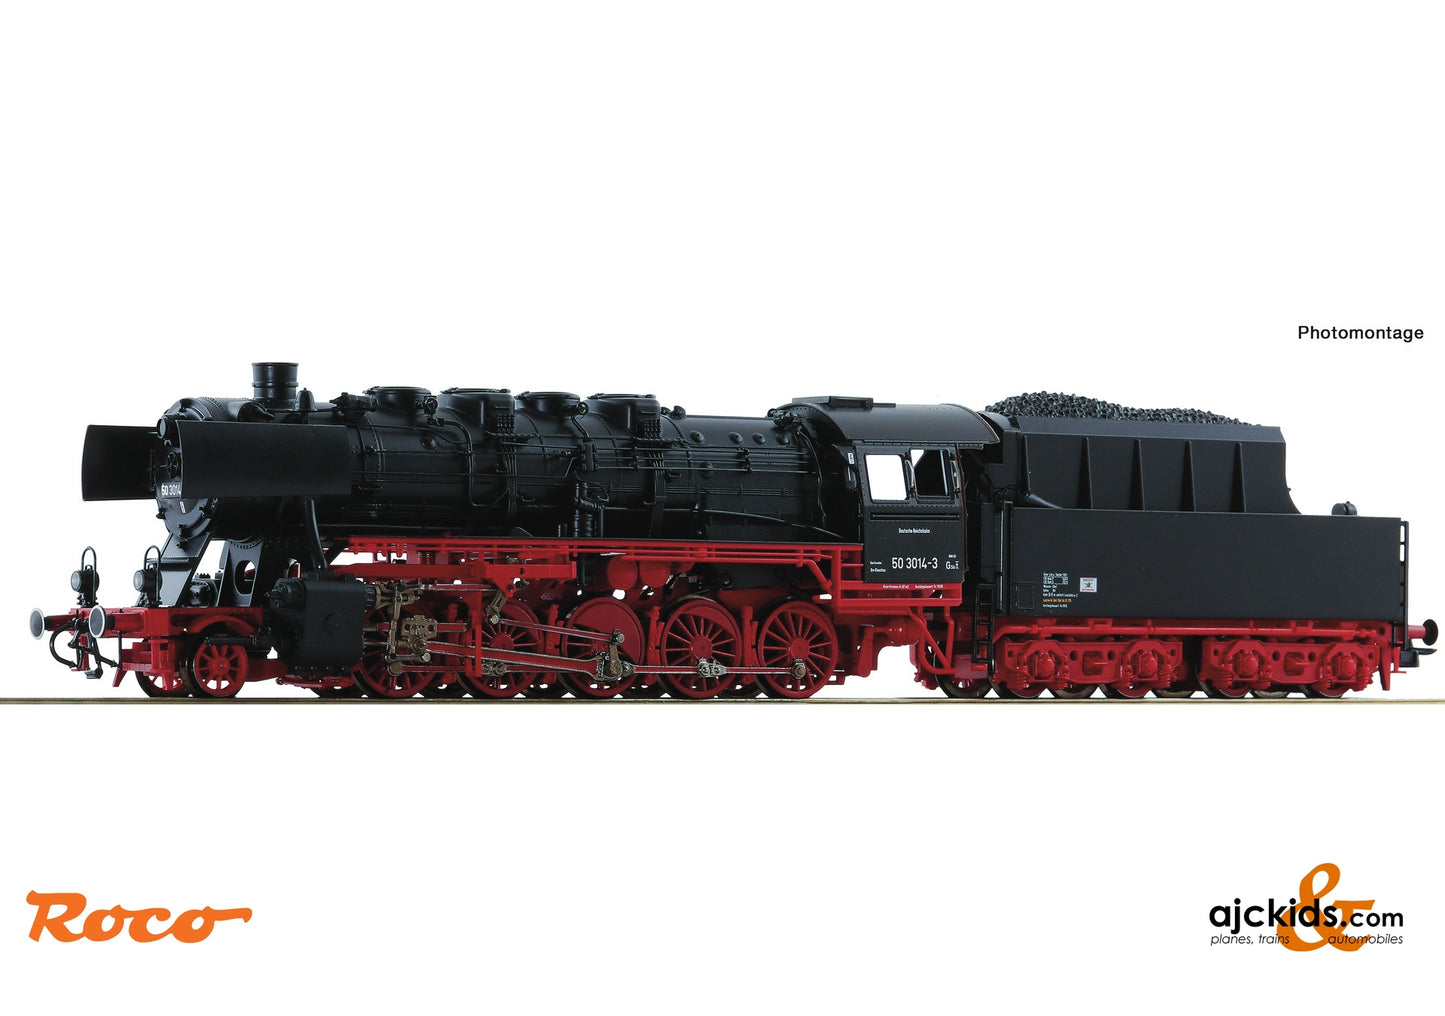 Roco 70042 - Steam locomotive class 50, DR at Ajckids.com